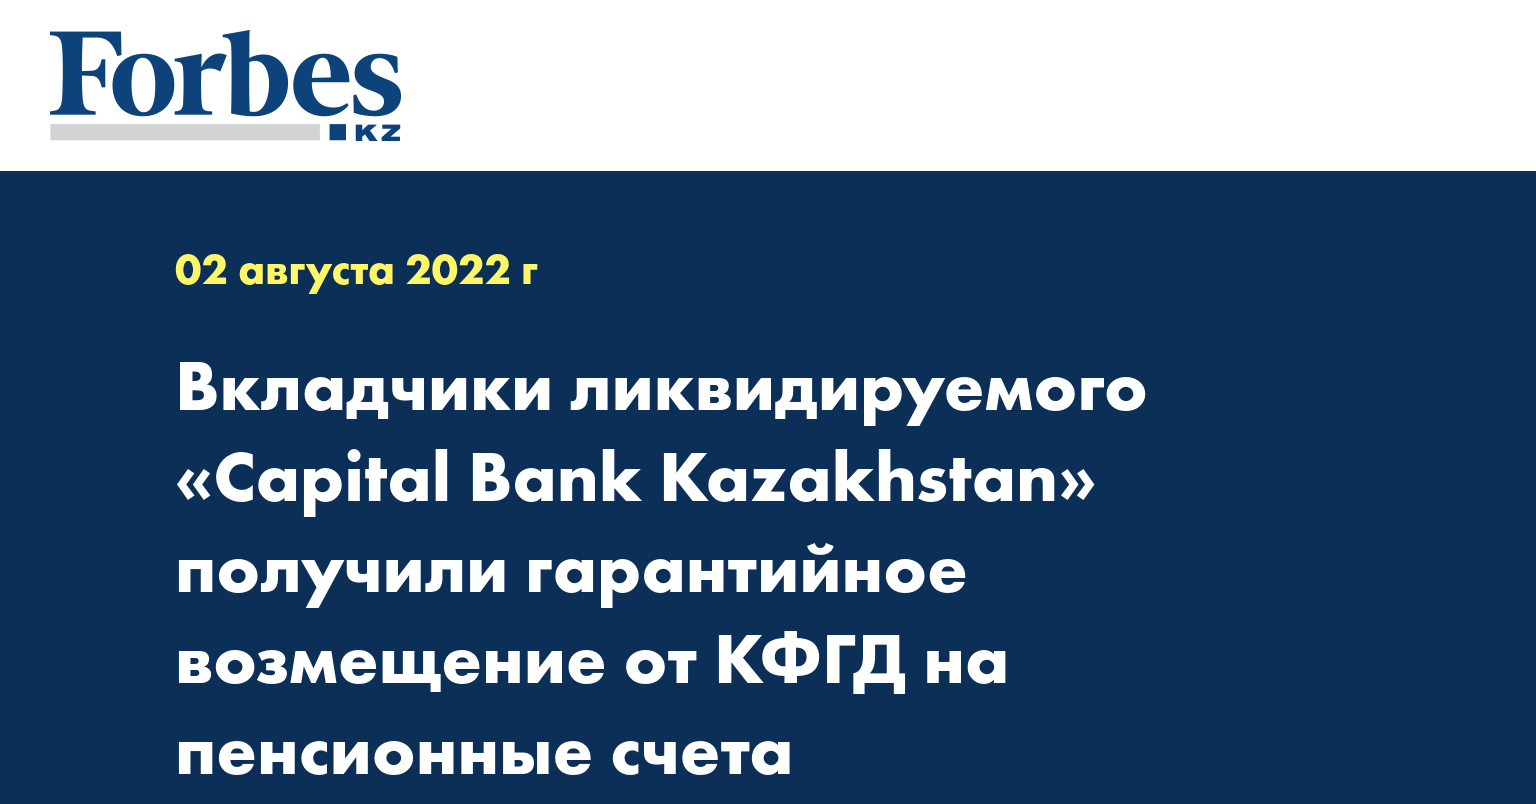 Вкладчики ликвидируемого «Capital Bank Kazakhstan» получили гарантийное возмещение от КФГД на пенсионные счета